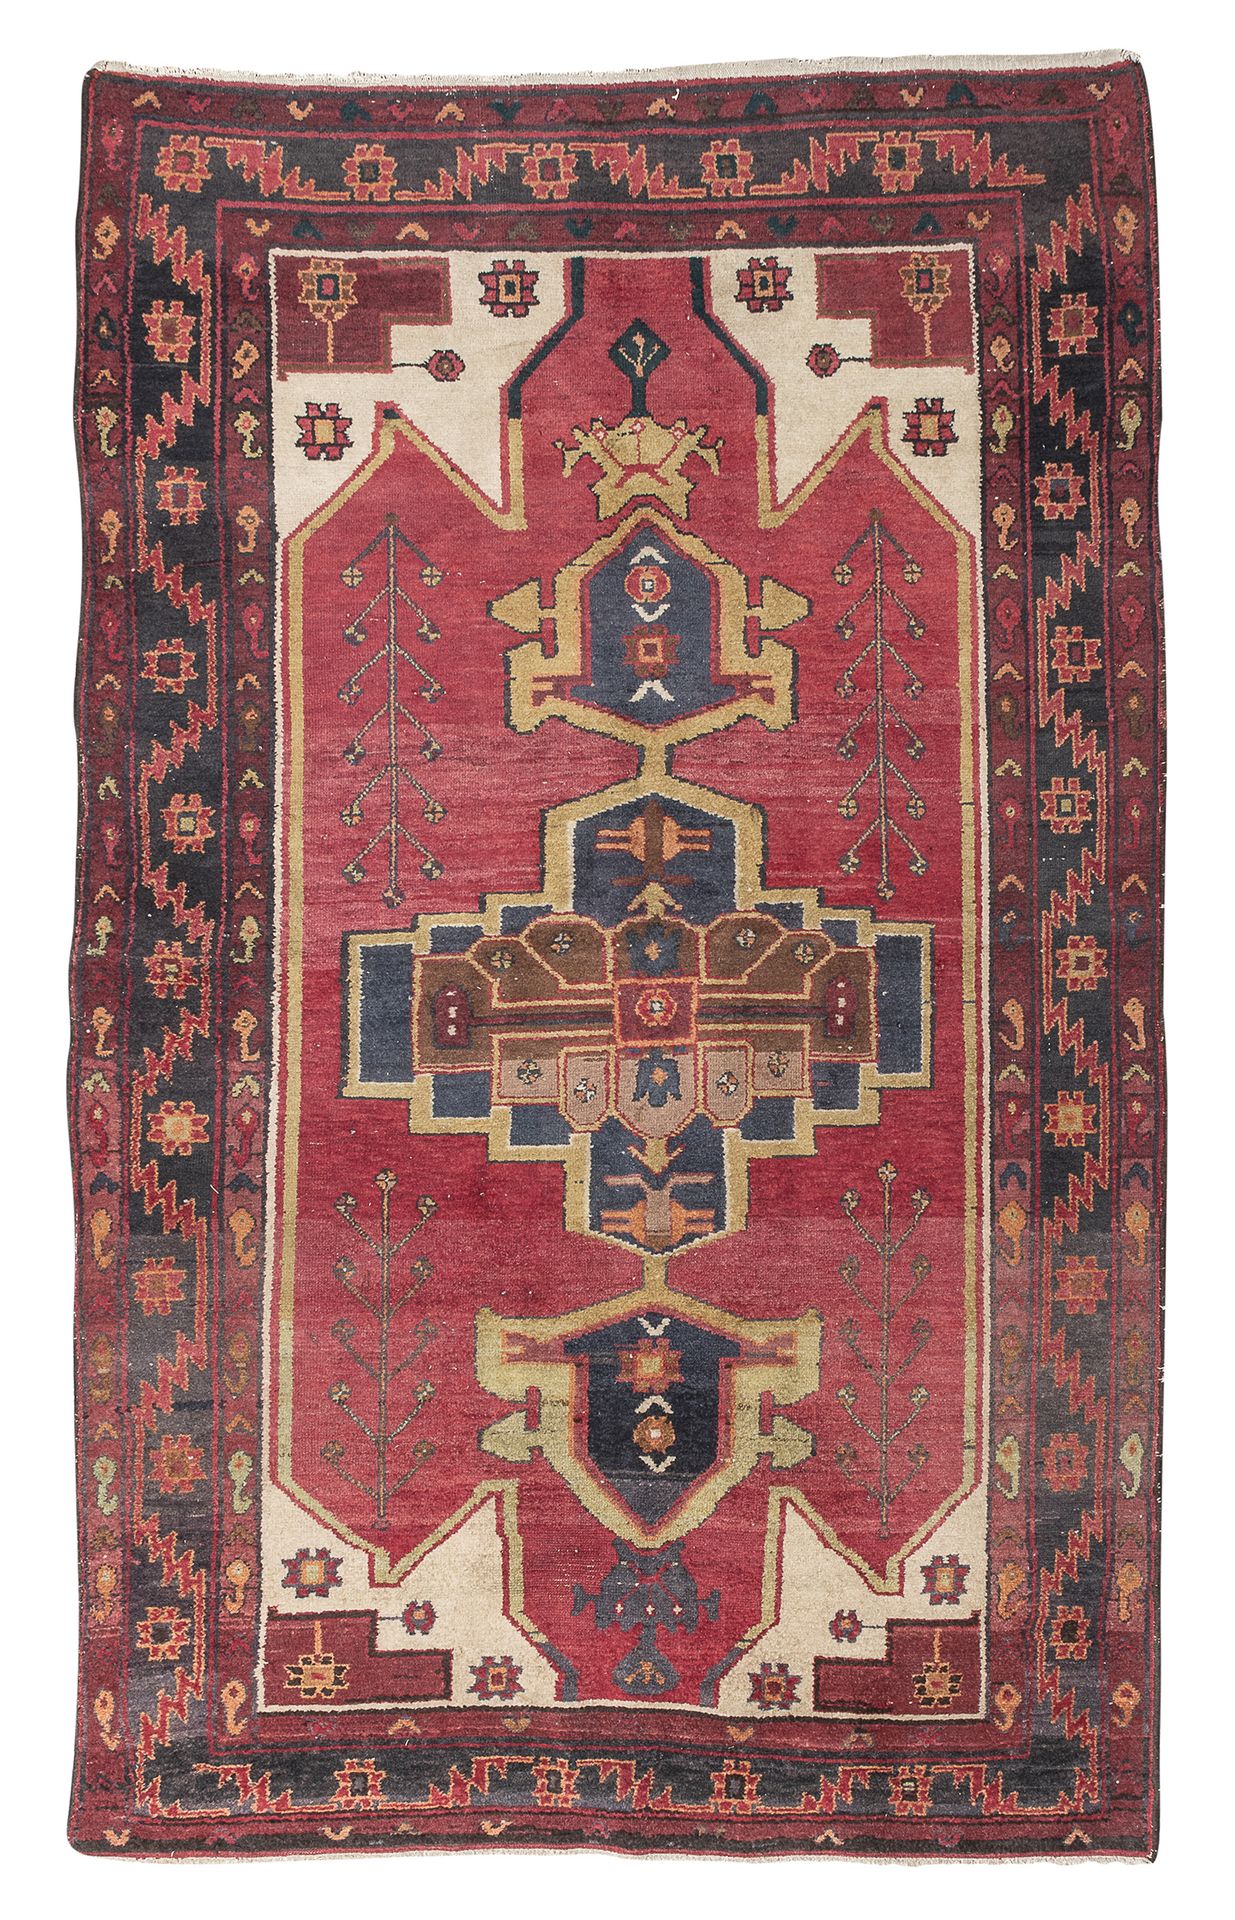 Null 来自波斯北部的地毯，20世纪初

有一个十字形的徽章，上面有棕榈花和花藤的次要图案，中央有红底。

尺寸为253 x 163厘米。